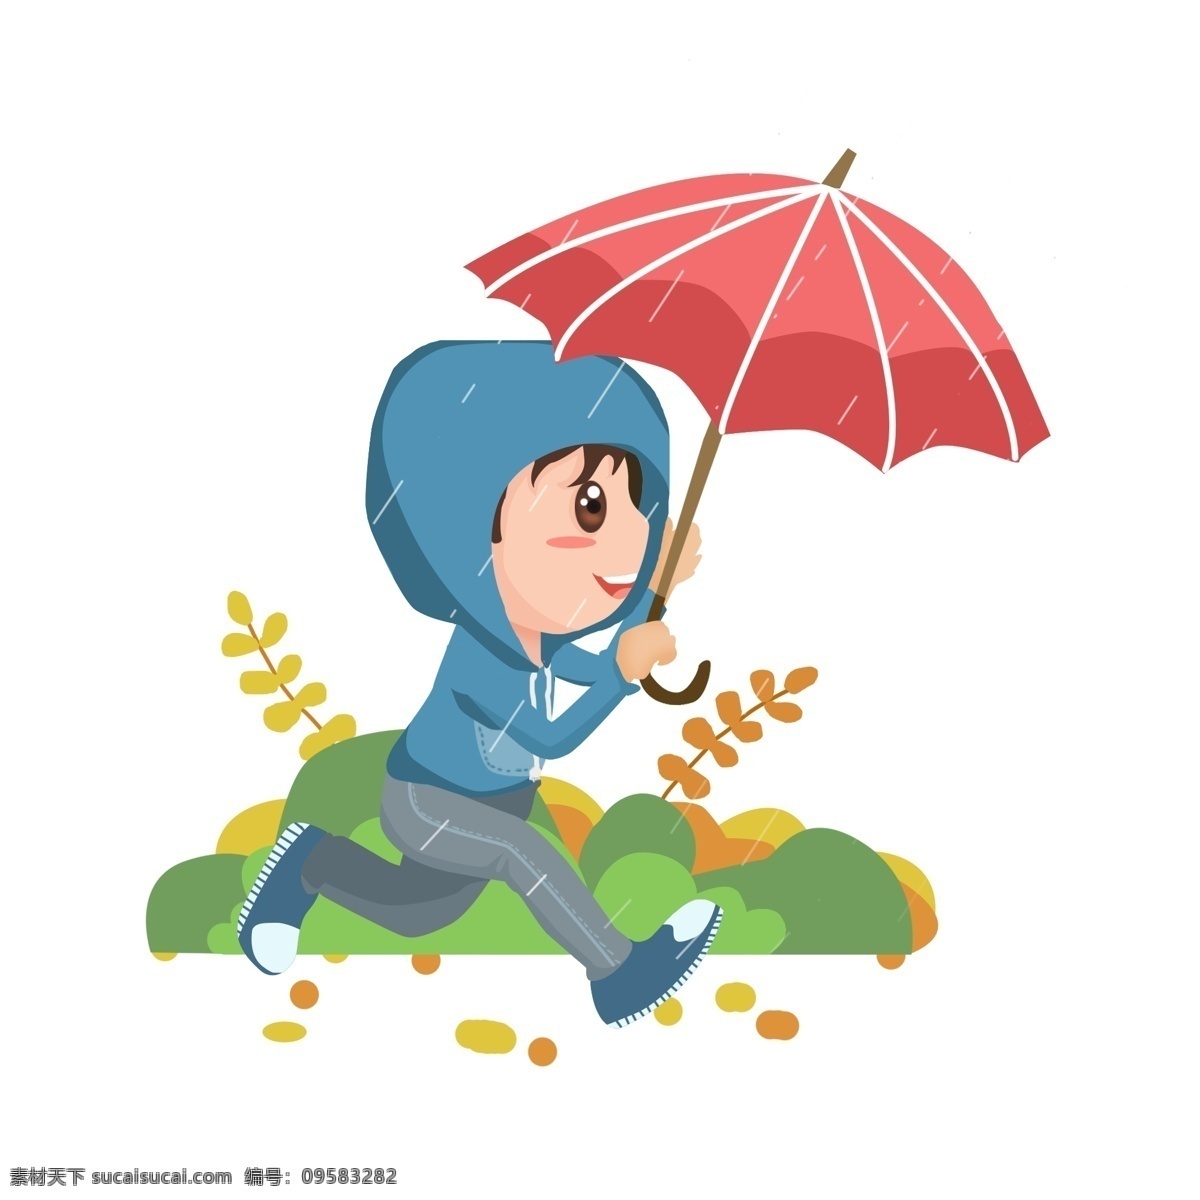 商用 高清 手绘 卡通 人物 小 男孩 打伞 元素 卡通人物 谷雨 可商用 下雨打伞 男孩打伞